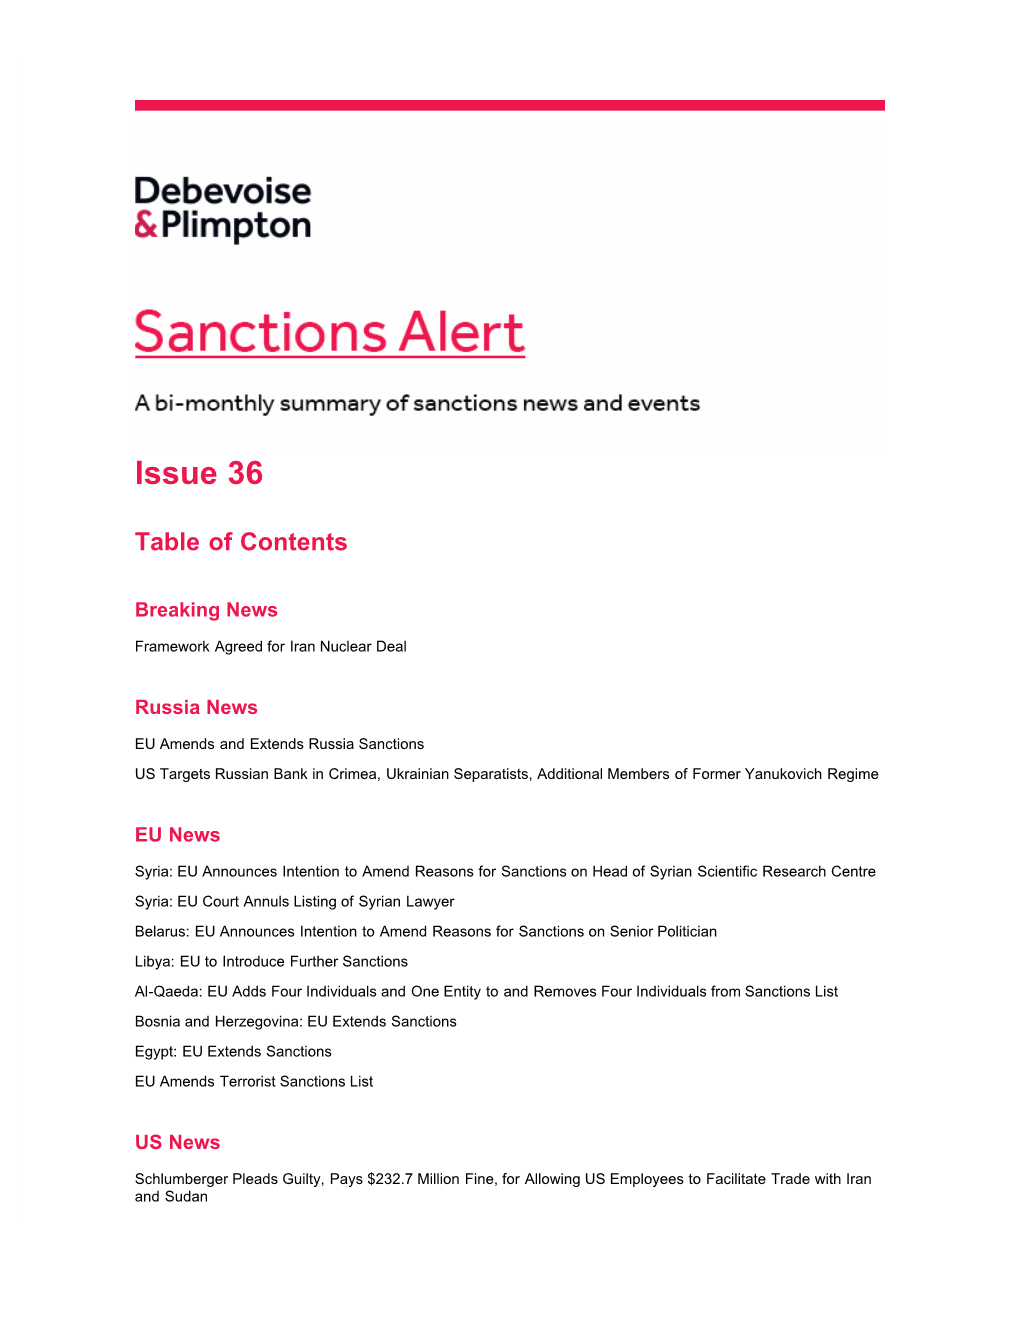 Sanctions Alert Issue 36